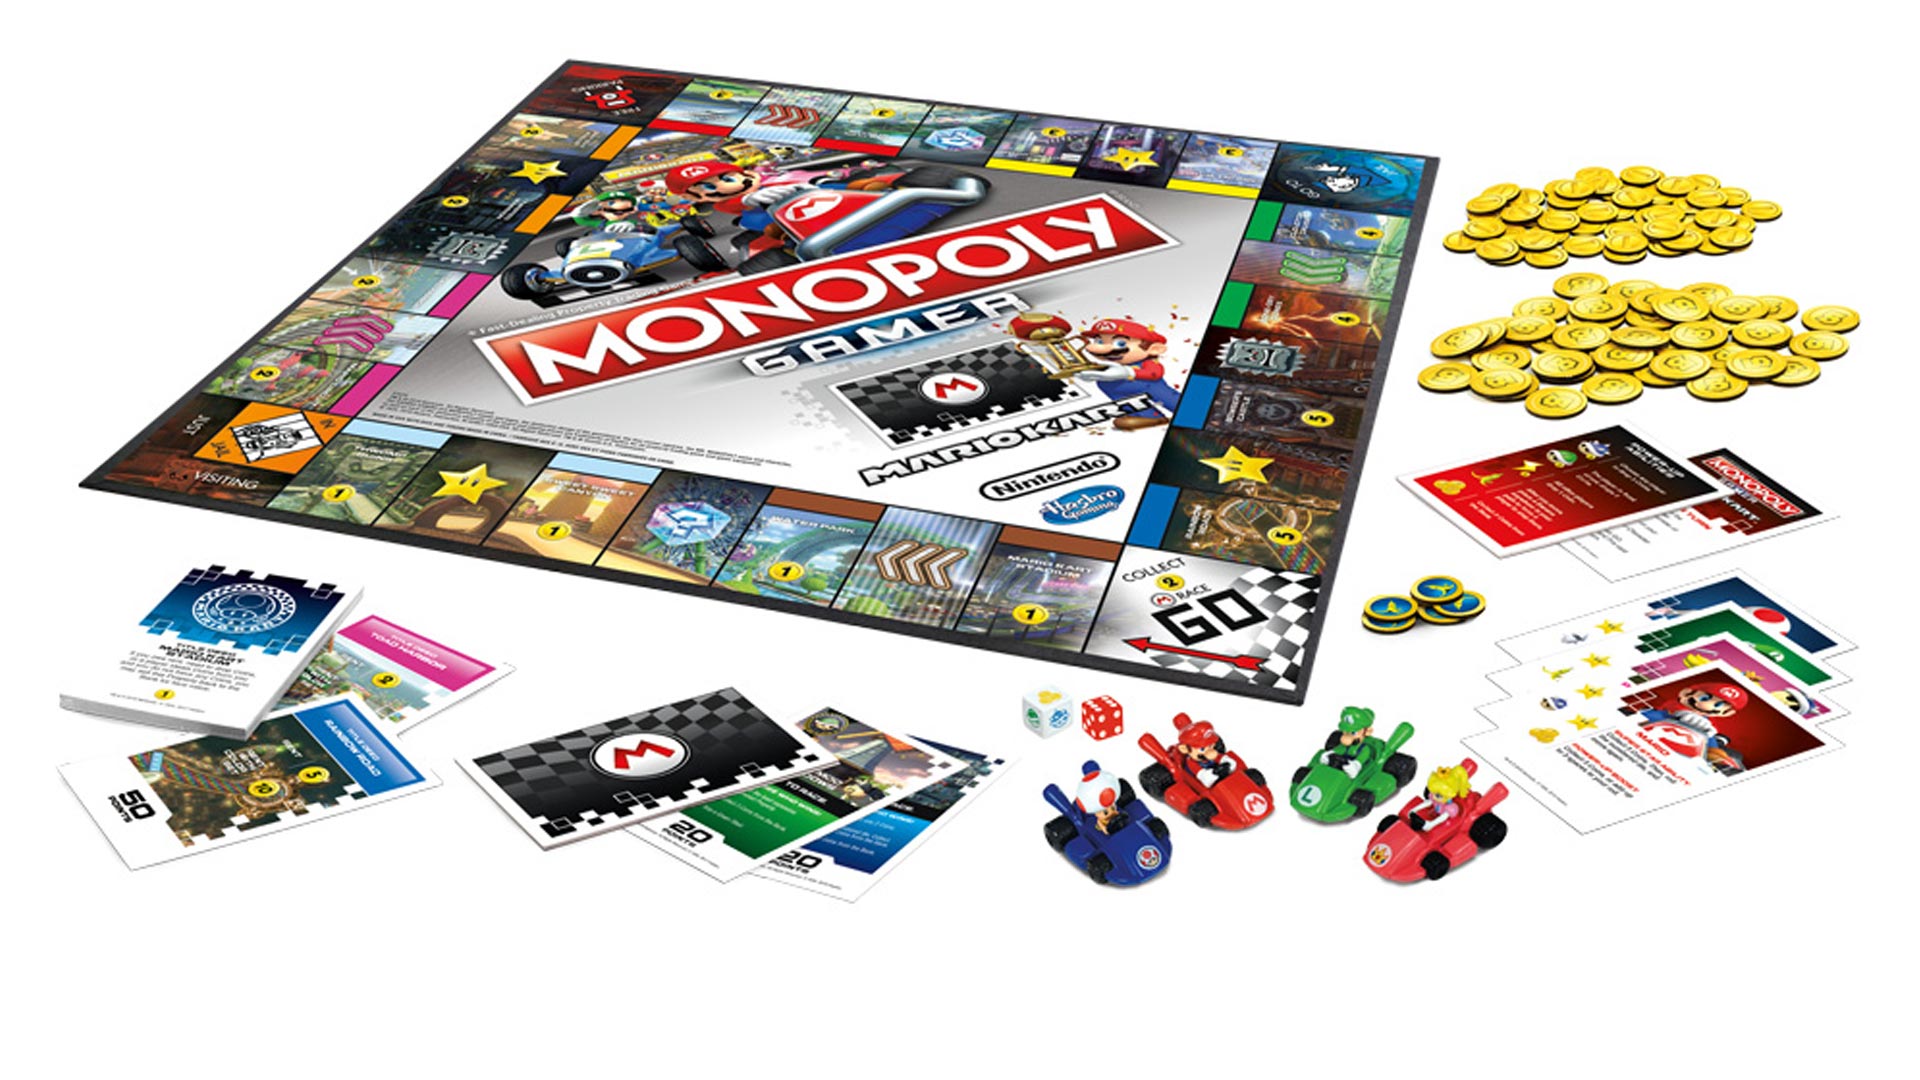 met de klok mee huwelijk boeren Race around the track w/ Mario, Luigi, and friends in Monopoly Gamer: Mario  Kart